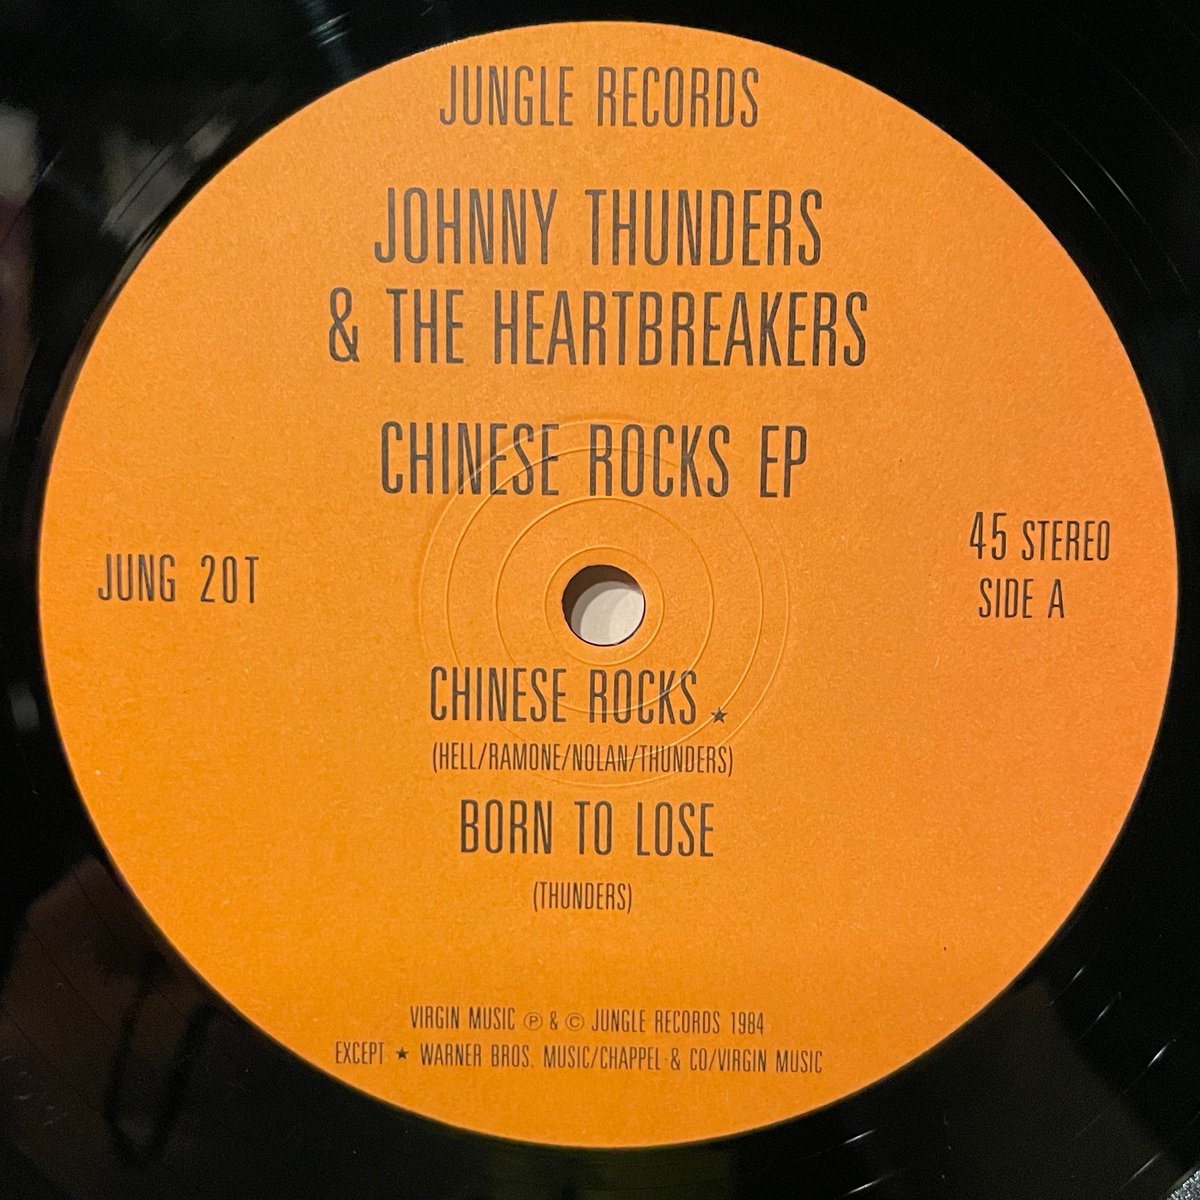 ほな12いこか JOHNNY THUNDERS & THE HEARTBREAKERS / CHINESE ROCKS EP [’84 Jungle Records --- JUNG 20T] #JohnnyThunders #TheHeartbreakers #ChineseRocks #BornToLose #OneTrackMind #IWannaBeLoved #listeningbar #vinylbar #musicbar #レコードバー #mhc23042024 youtube.com/watch?v=QJxroq…